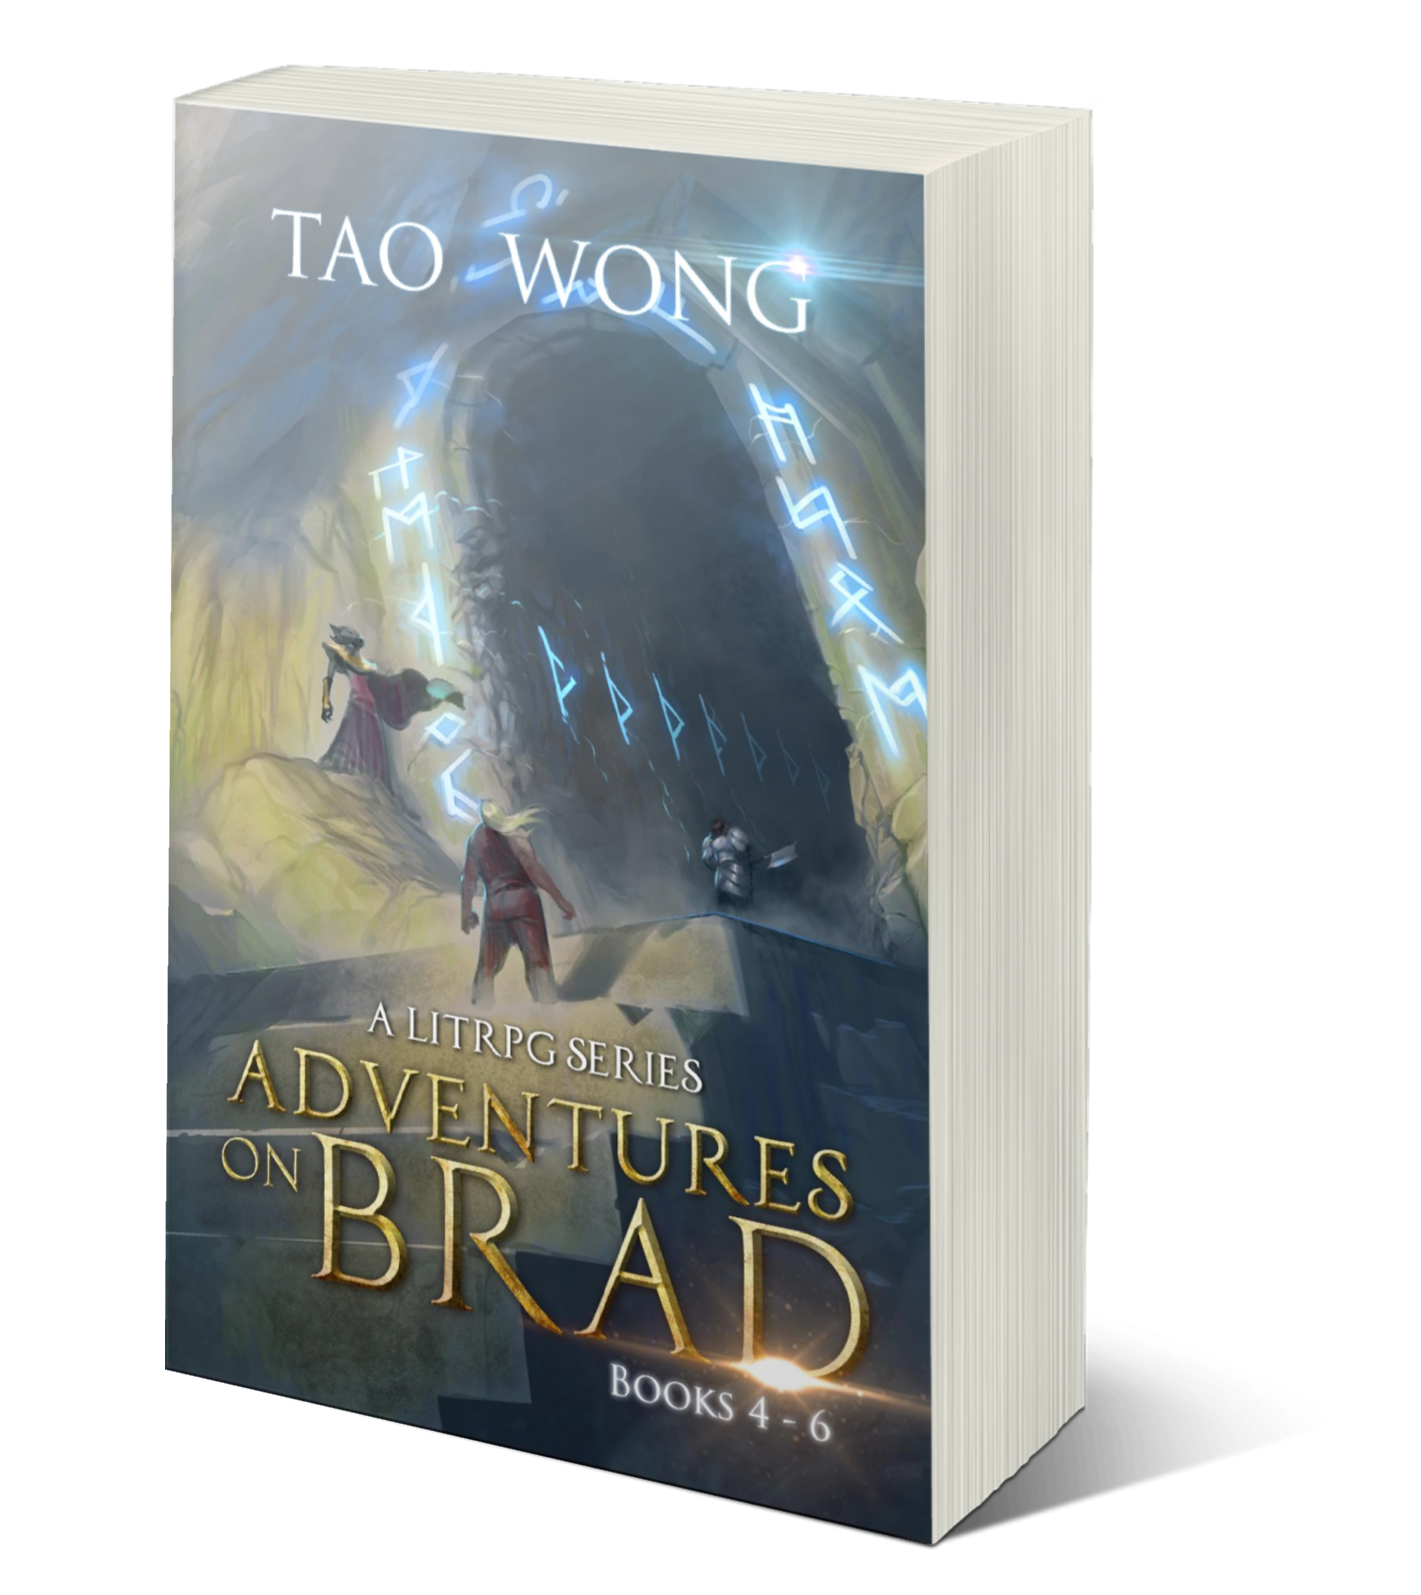 Adventures on Brad: Books 4-6